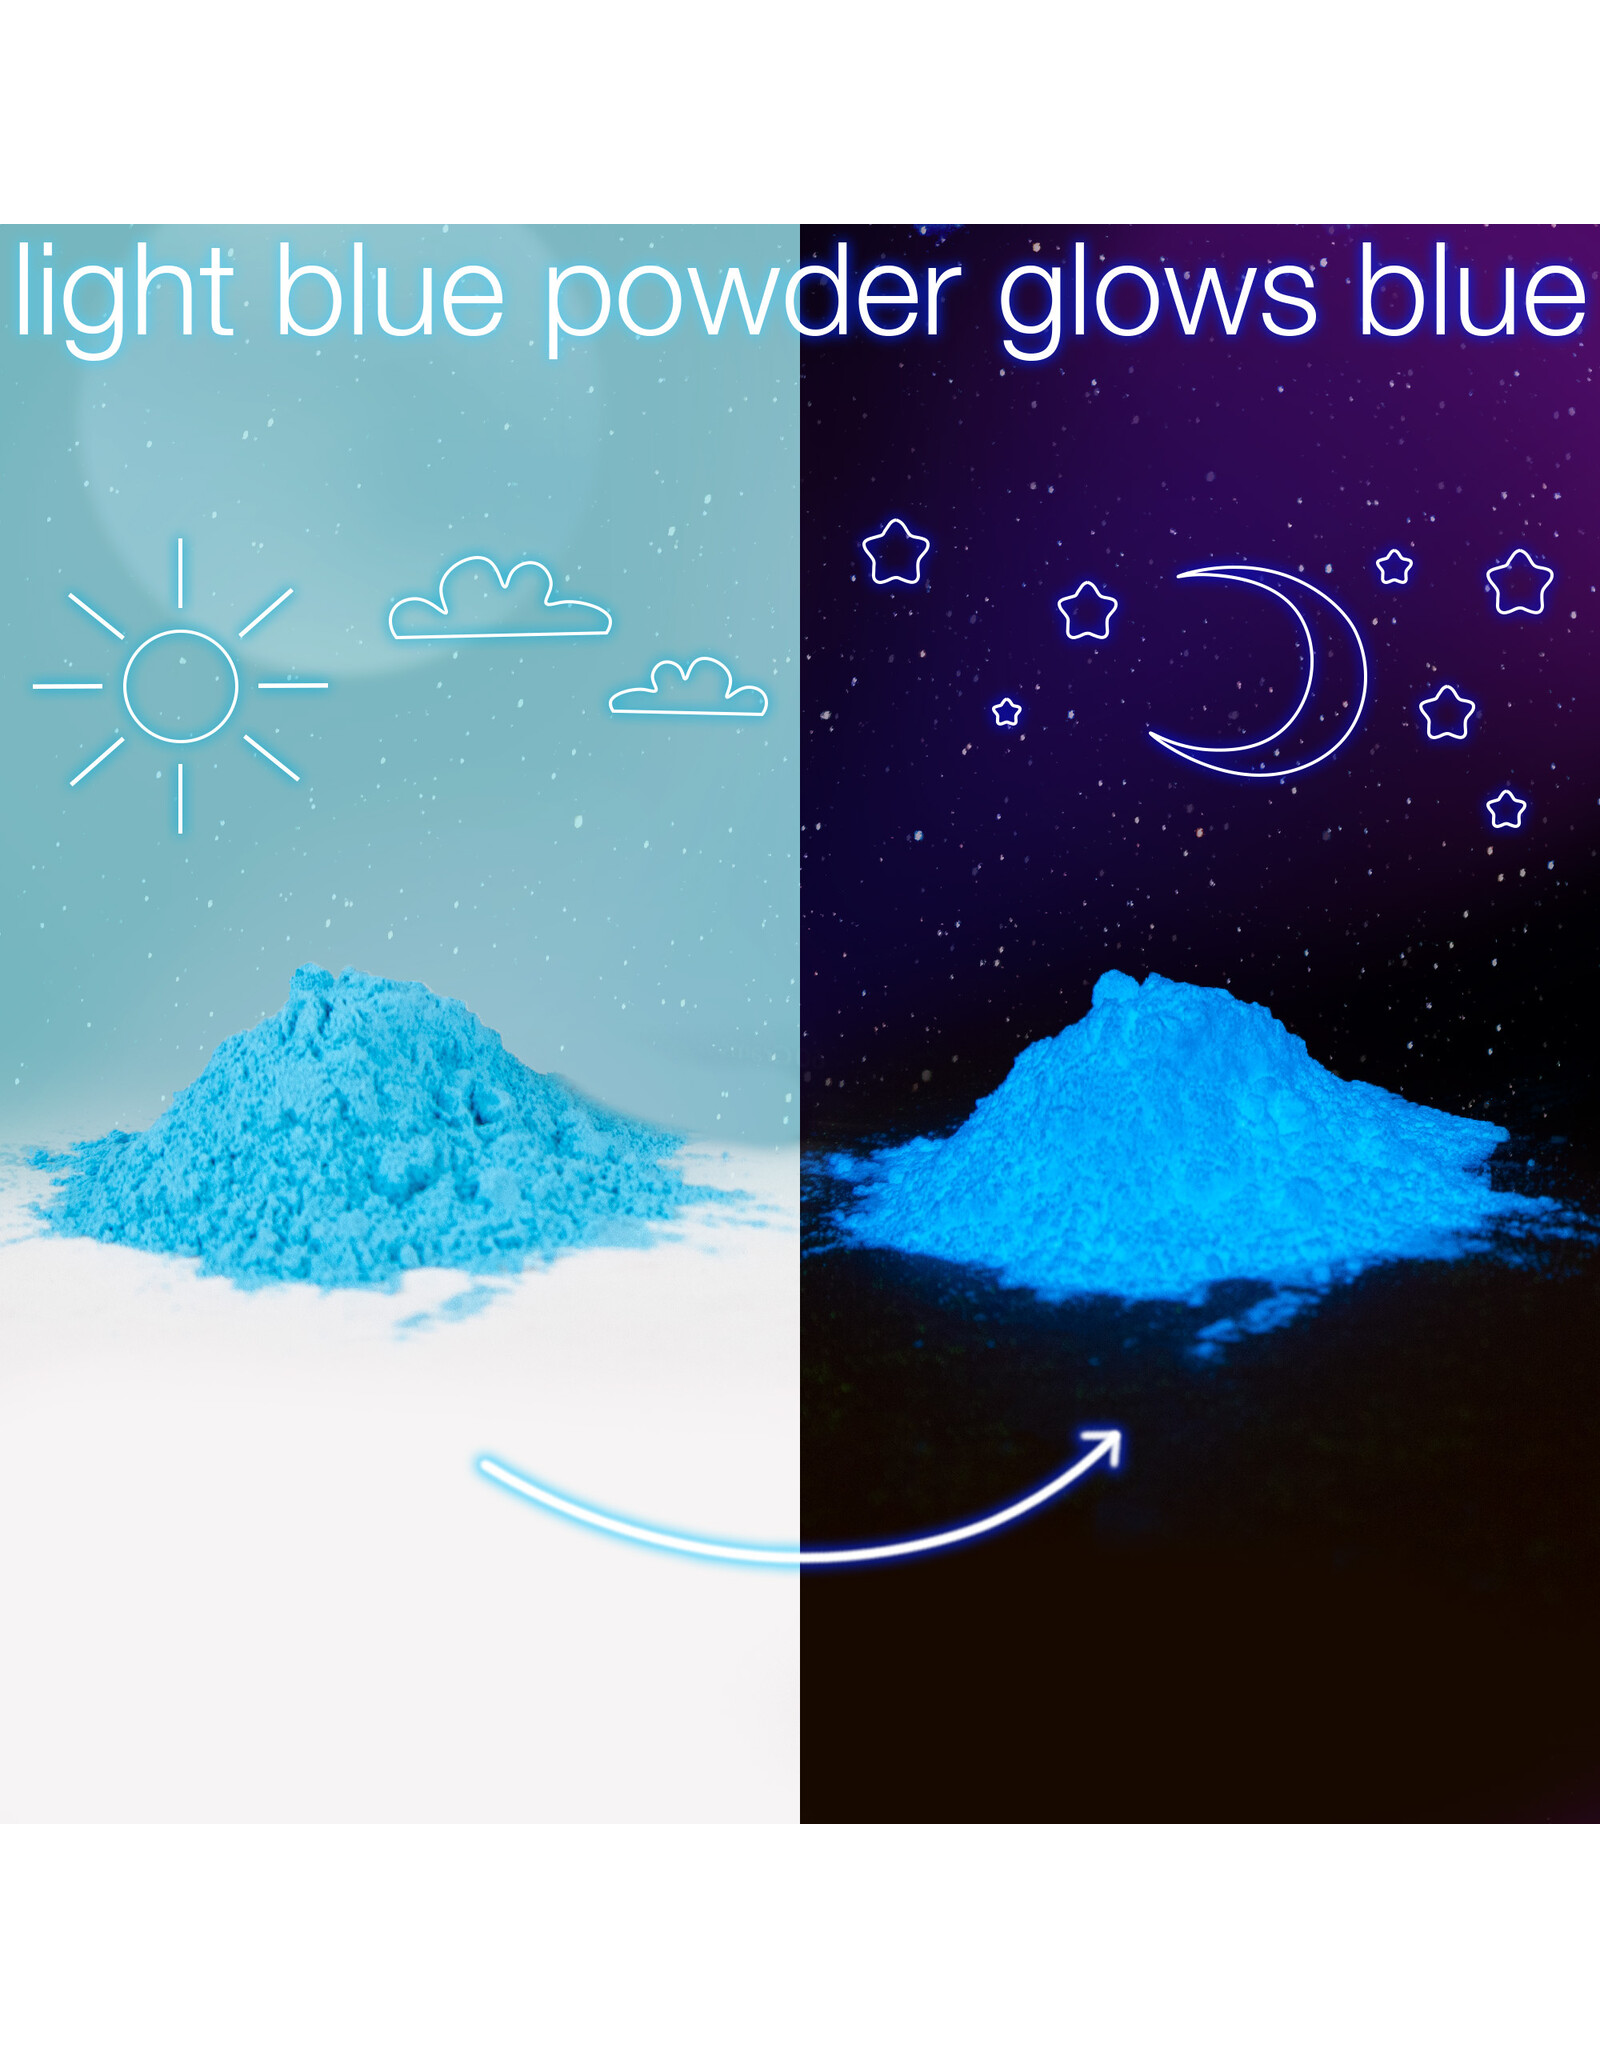 W.A. Portman WA Portman Blue Moon Glow Powder